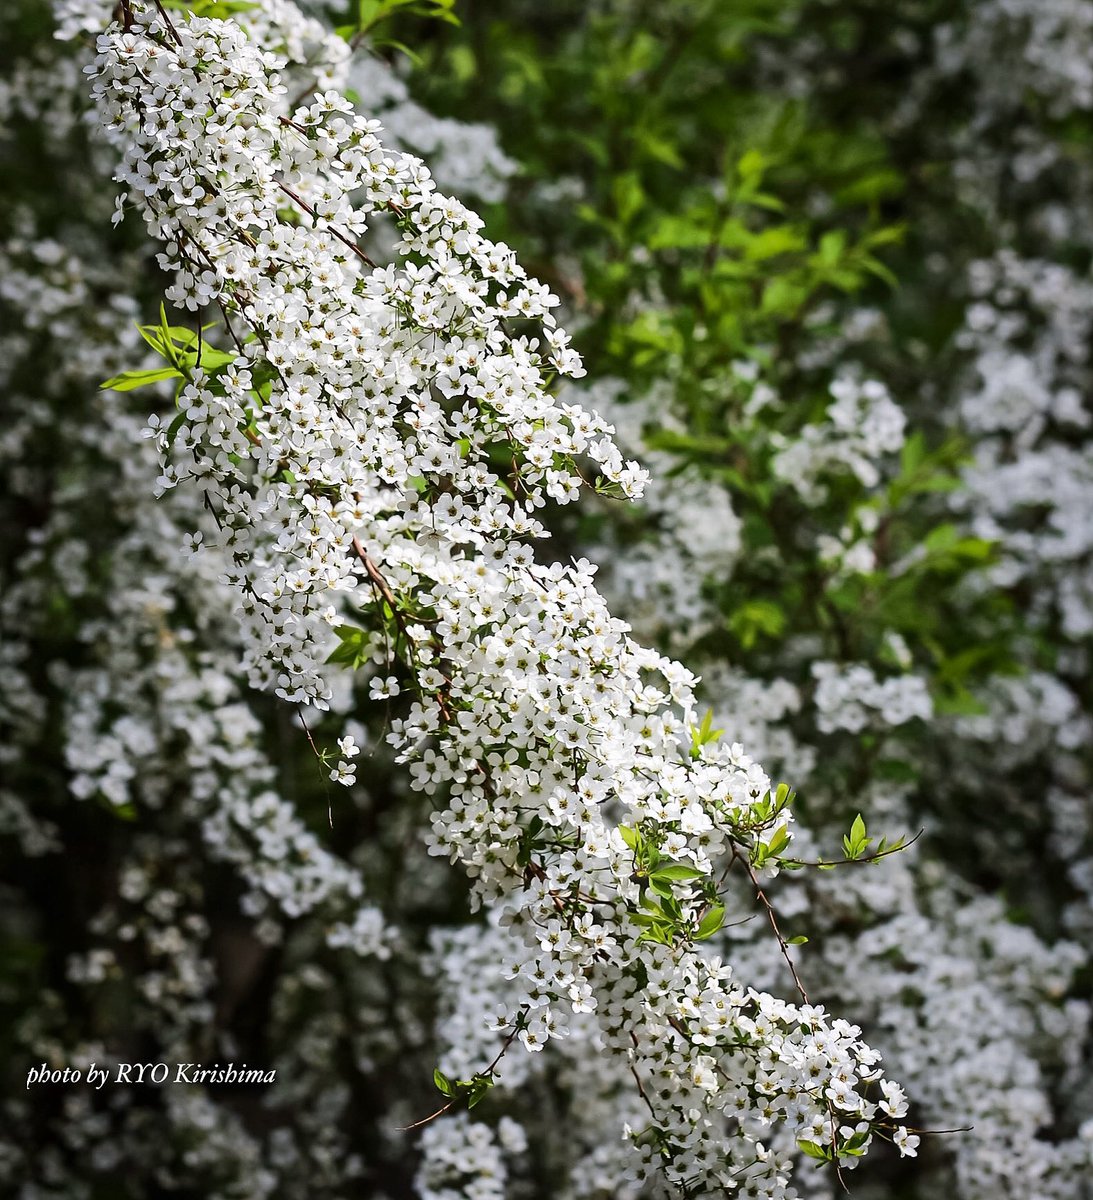 雪柳。
和名のセンスが大好き。
ええ？！と思うものもたまにはあるけど。

#北海道大学植物園 #ユキヤナギ #花 #カメラ散歩 #photo #flower #nature #写真撮ってる人と繋がりたい #花好きな人と繋がりたい #ファインダー越しの私の世界 #レンズ越しの私の世界 #キリトリセカイ #ダレカニミセタイハナ